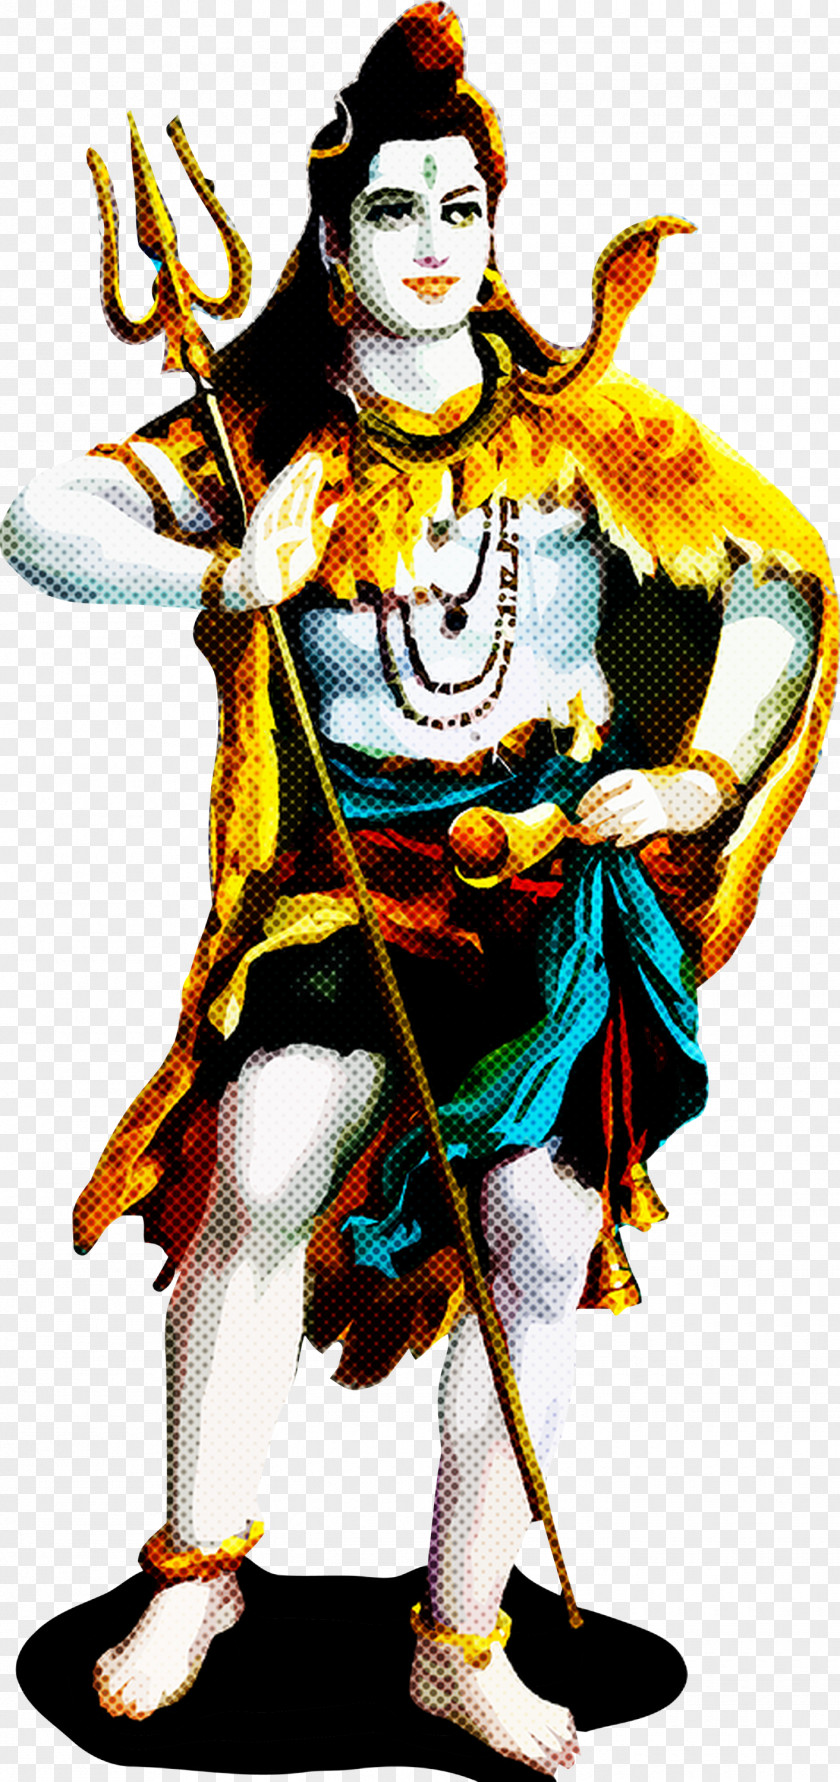 Maha Shivaratri Happy Lord Shiva PNG